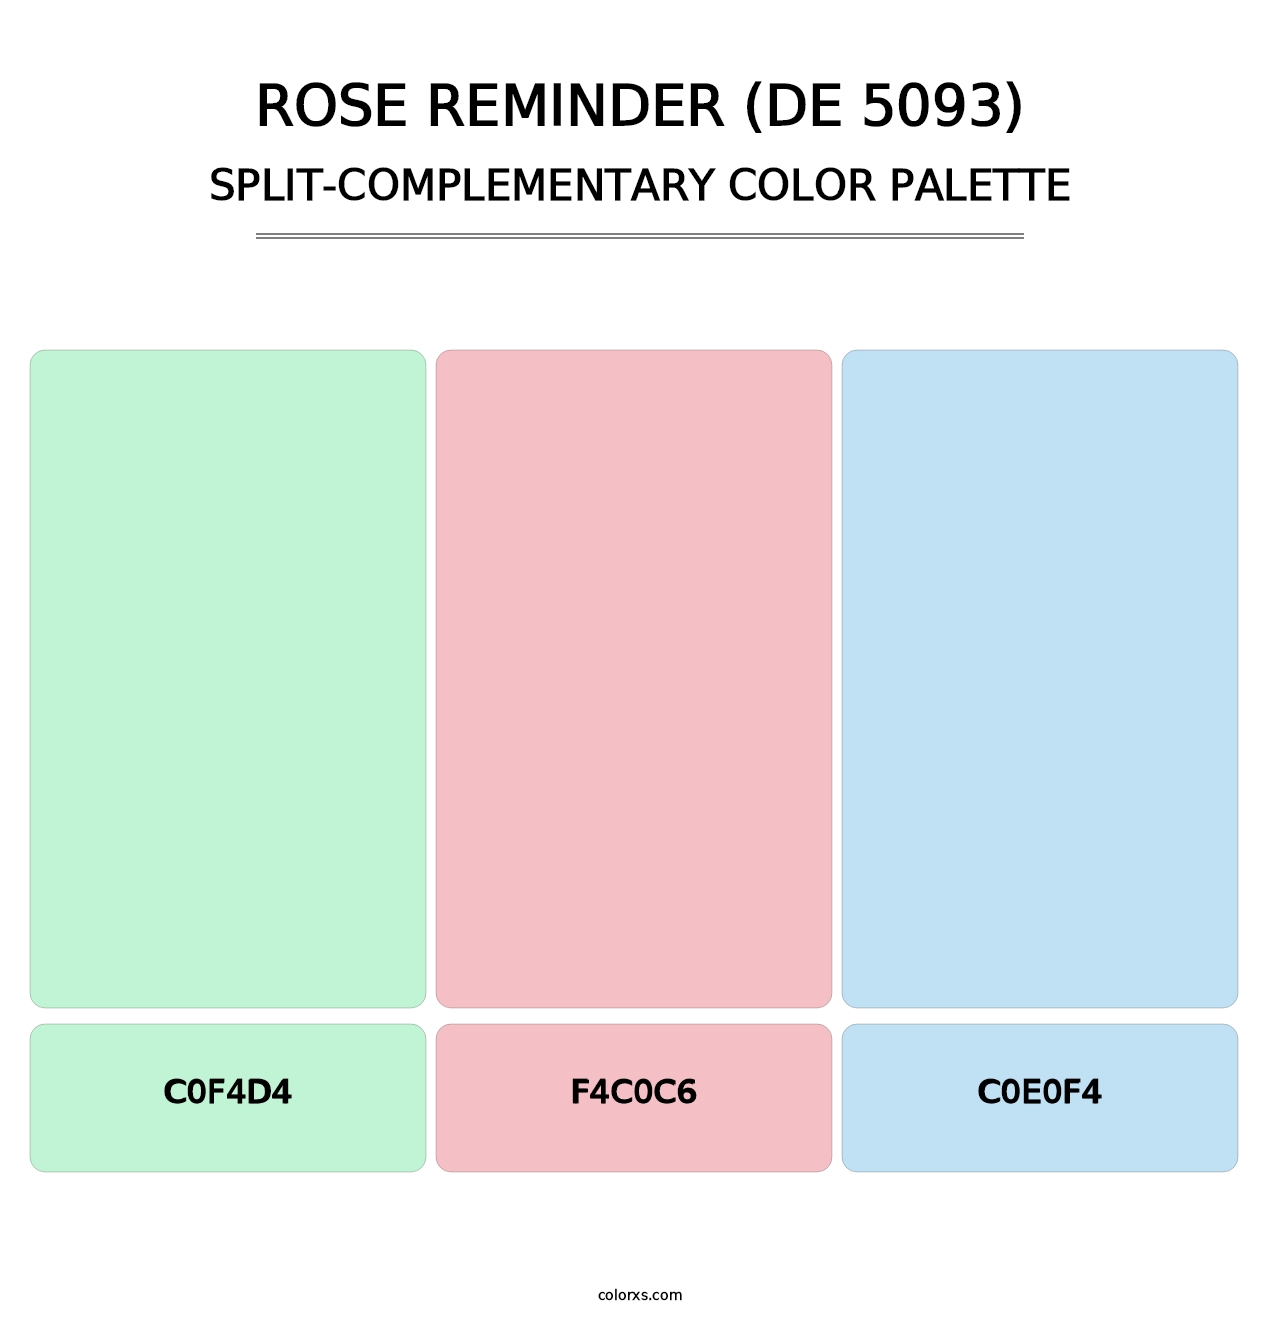 Rose Reminder (DE 5093) - Split-Complementary Color Palette